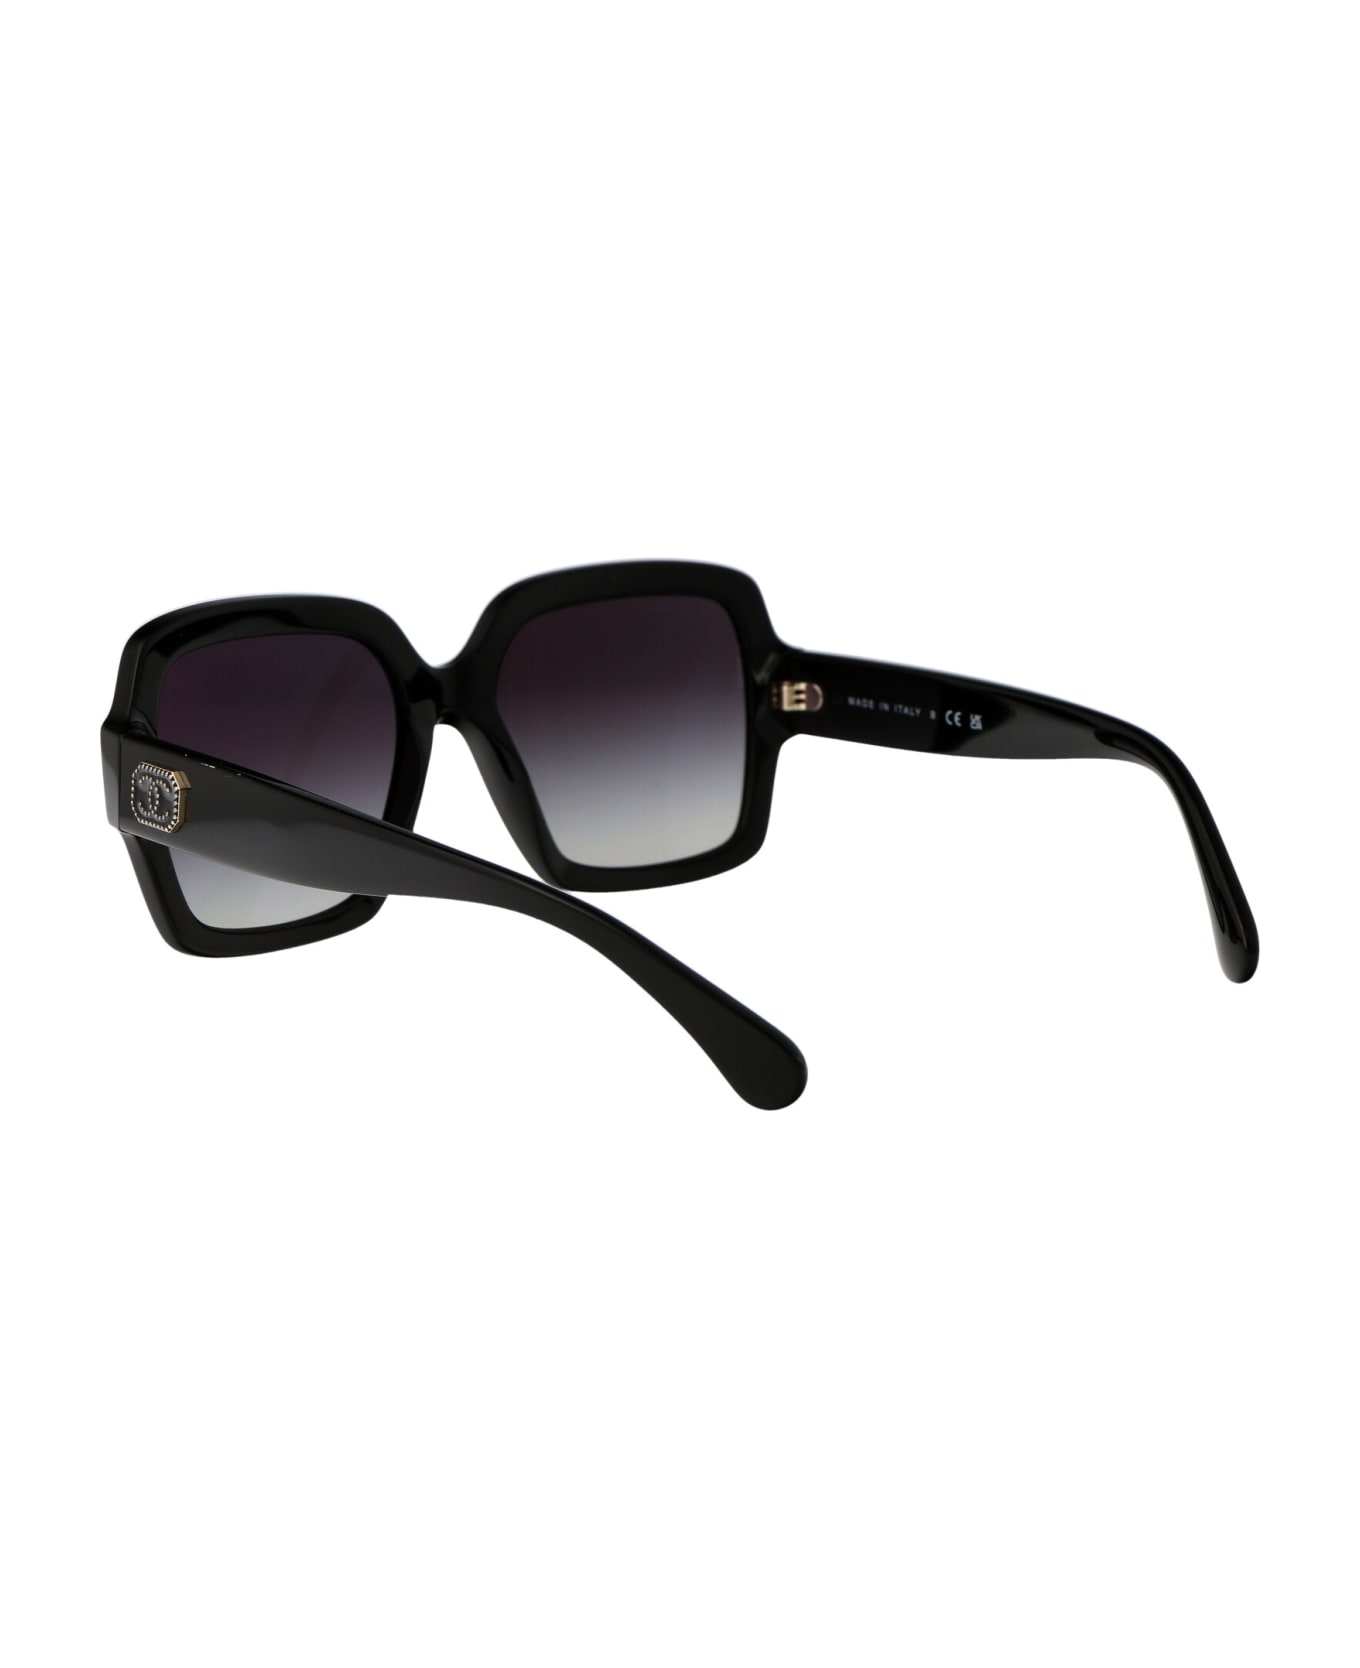 Chanel 0ch5479 Sunglasses - 1403S6 BLACK